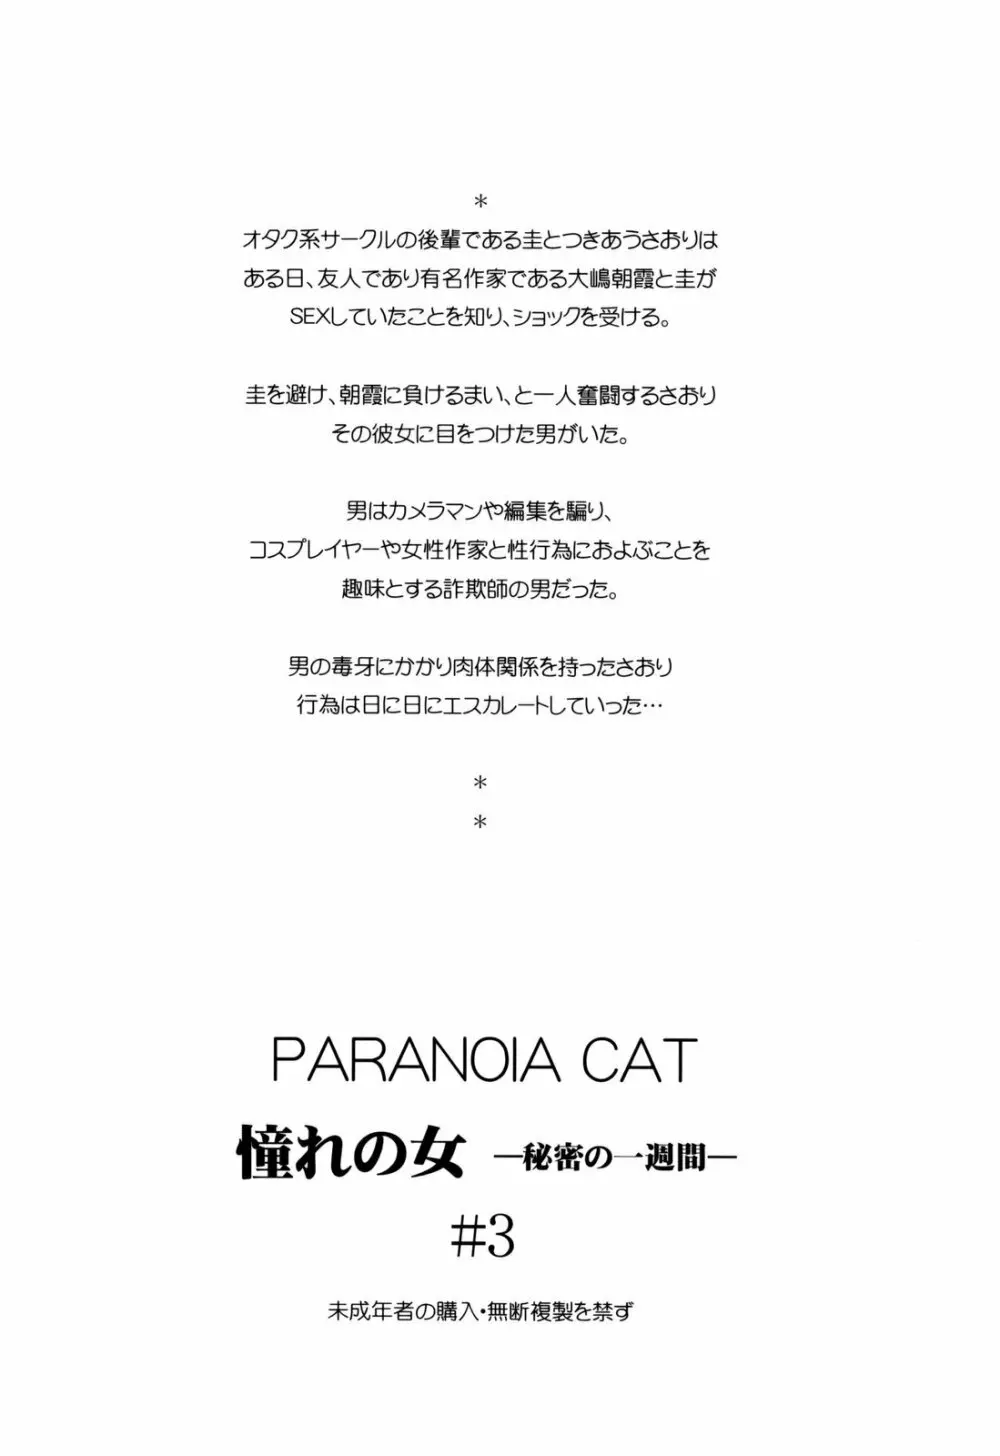 (コミコミ13) [PARANOIA CAT (藤原俊一)] 憧れの女 -秘密の一週間- #3 52ページ